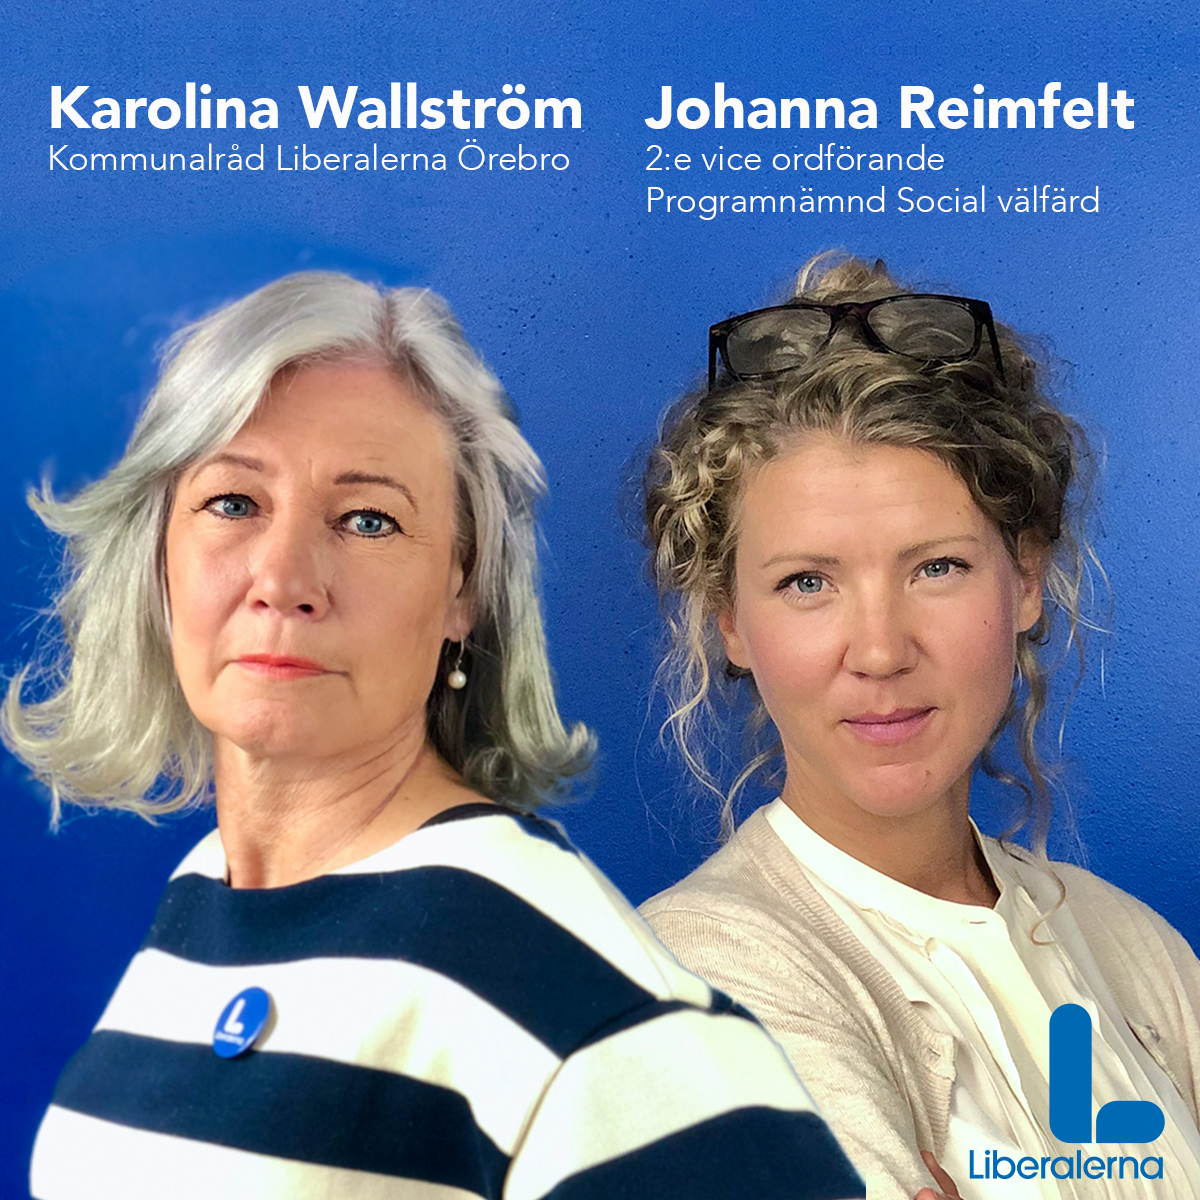 Karolina Wallström (L) Kommunalråd och Johanna Reimfelt (L) 2:e vice ordförande Programnämnd Social välfärd